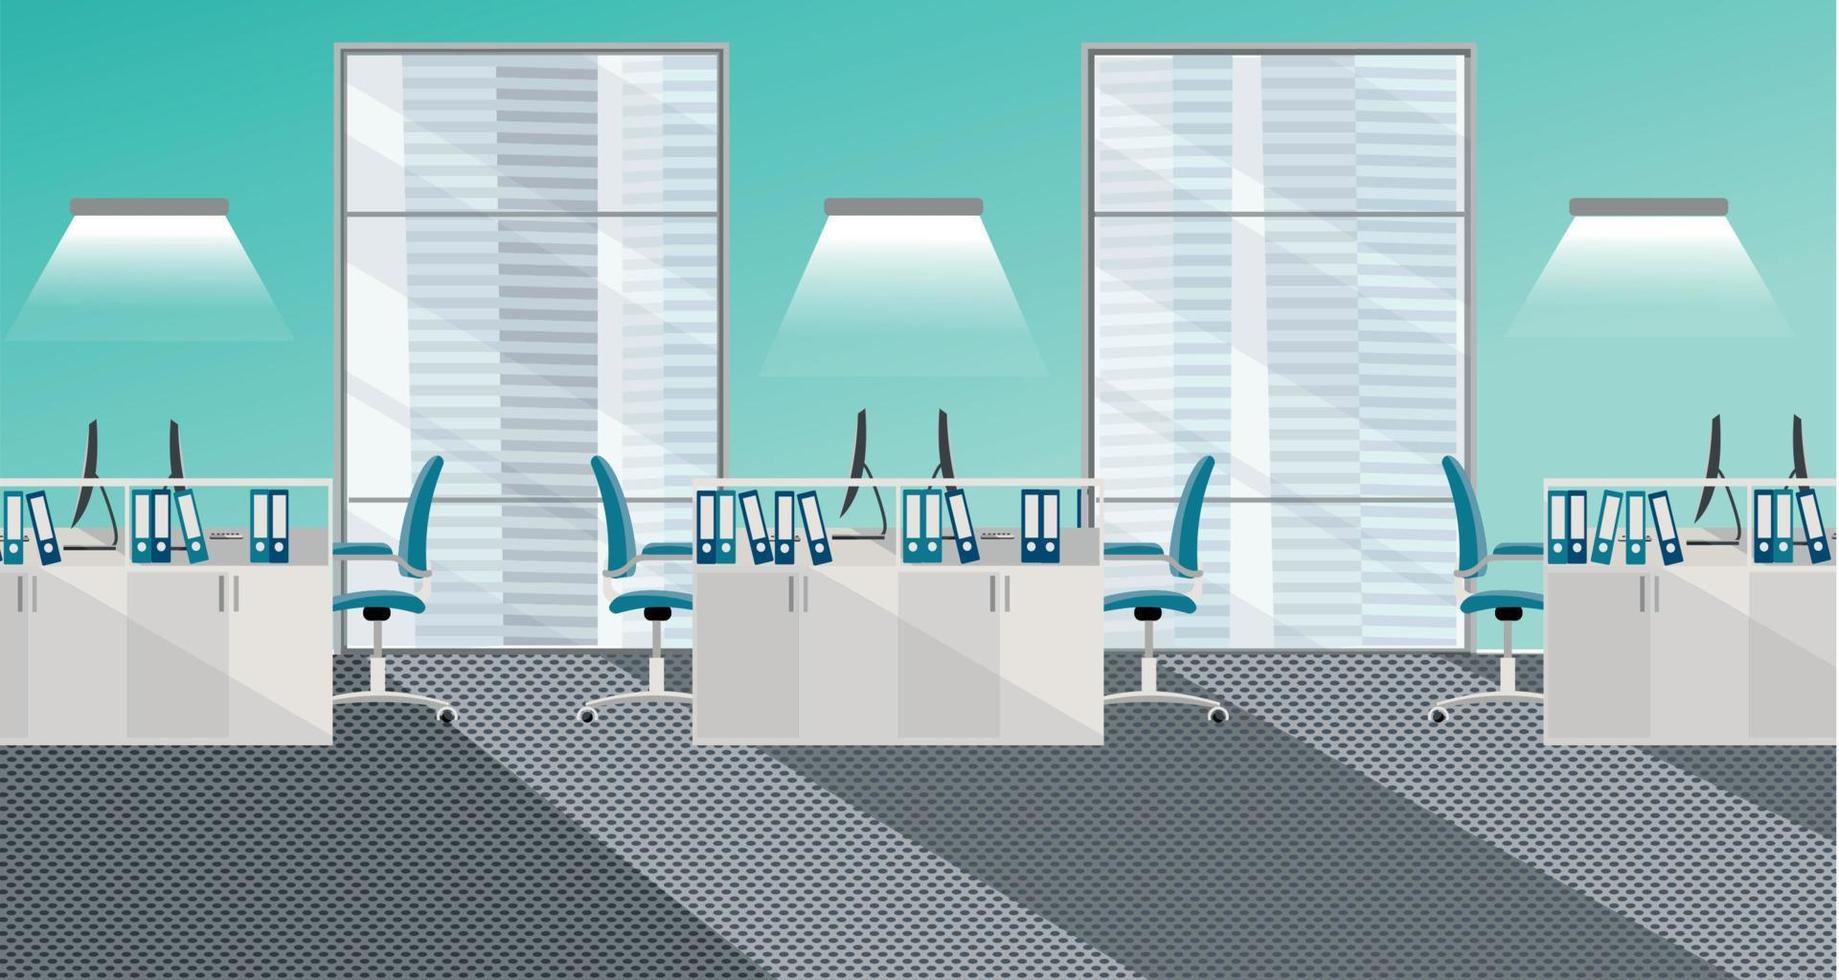 ilustración vectorial plana del interior de la oficina moderna con grandes ventanales en rascacielos con muebles y computadoras. espacio abierto para 6 personas. orden en mesas, carpetas de documentos, luz de ventanas vector